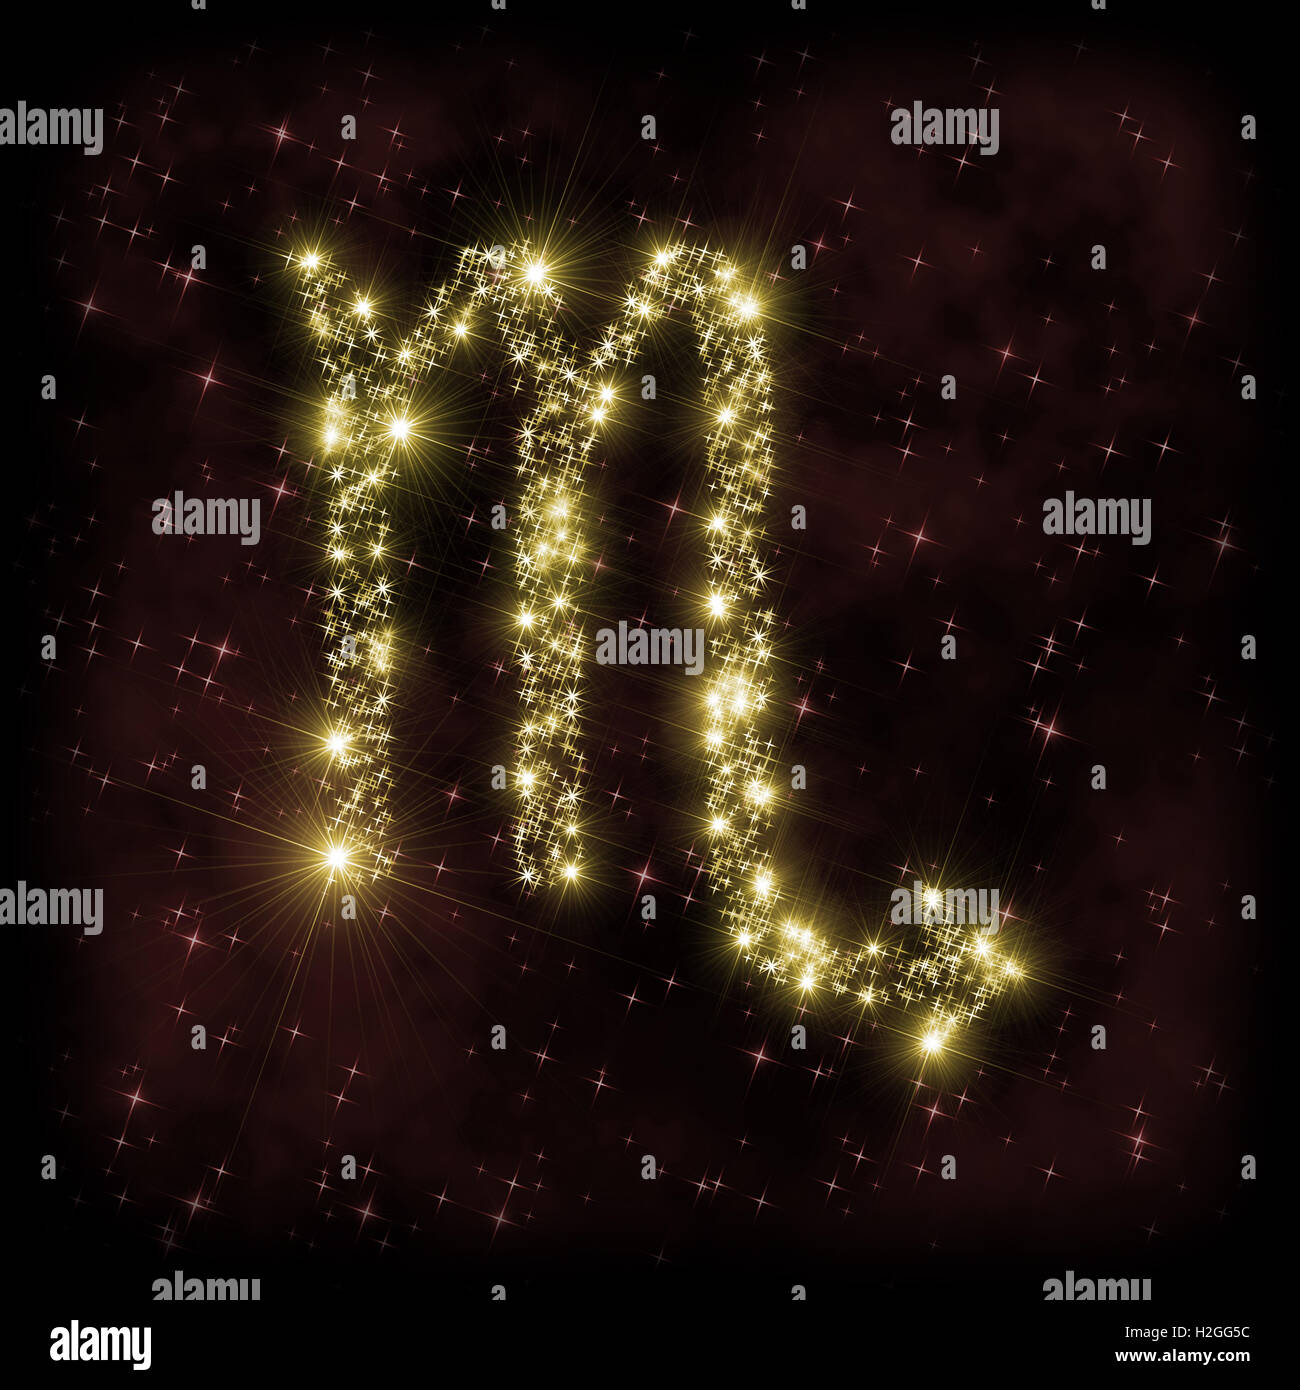 Scorpione segno Zodiak - astronomia o astrologia illustrazione in cui il simbolo corrispondente alla costellazione fatta di stelle scintillanti Foto Stock